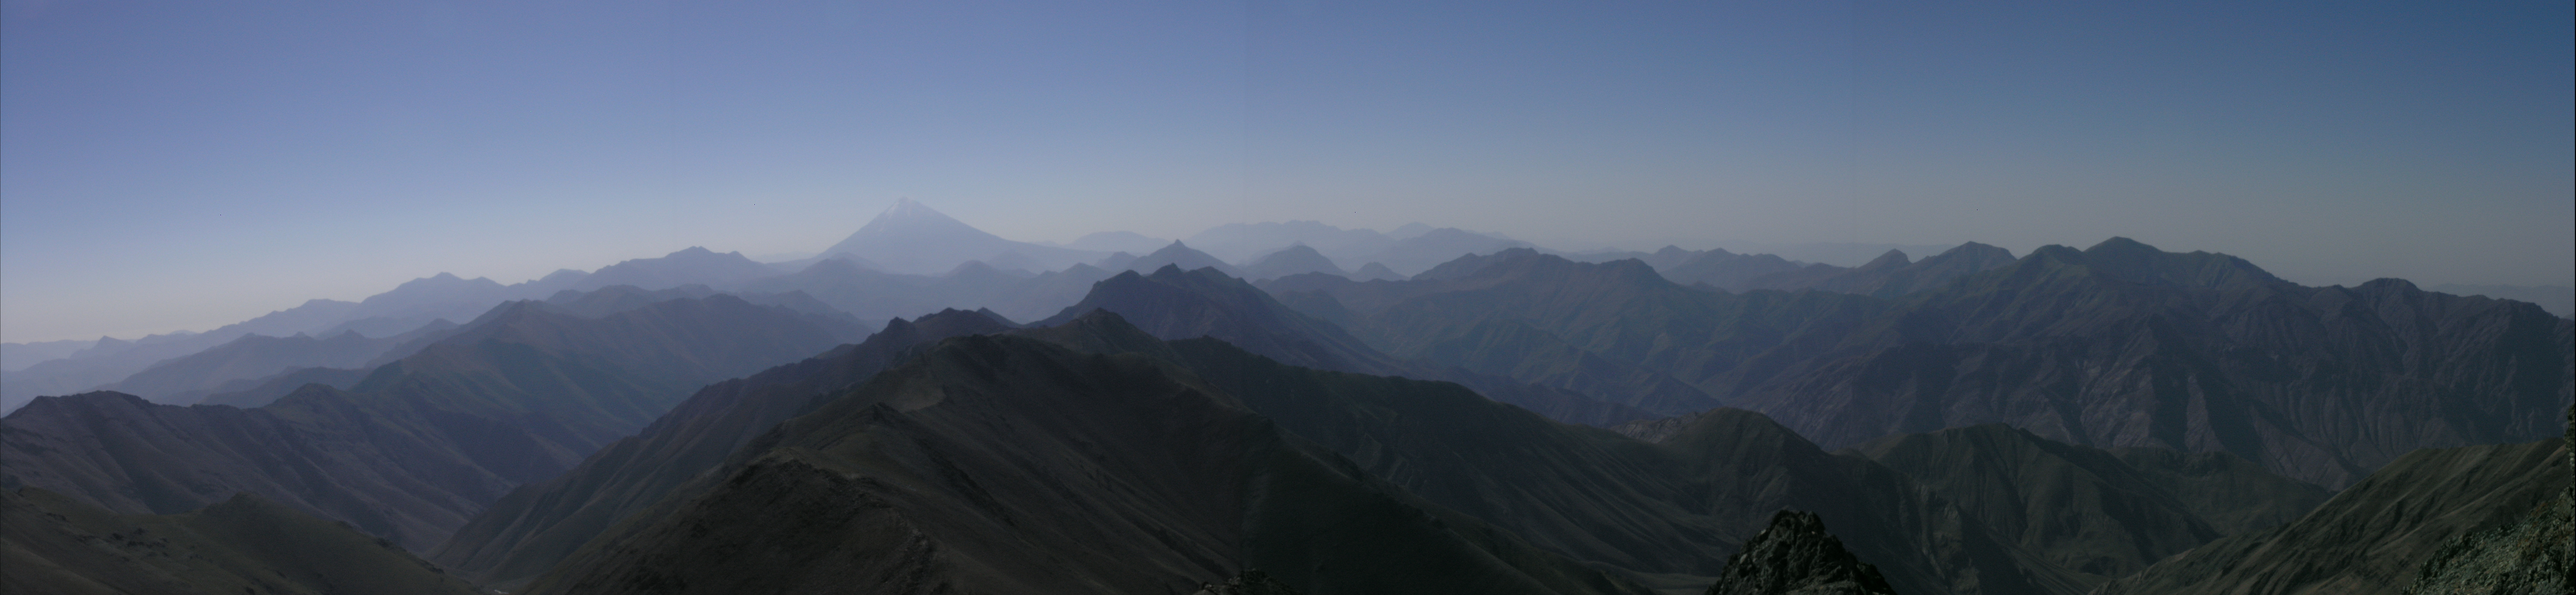 پانورامای البرز مرکزی و دماوند از قله خلنو 